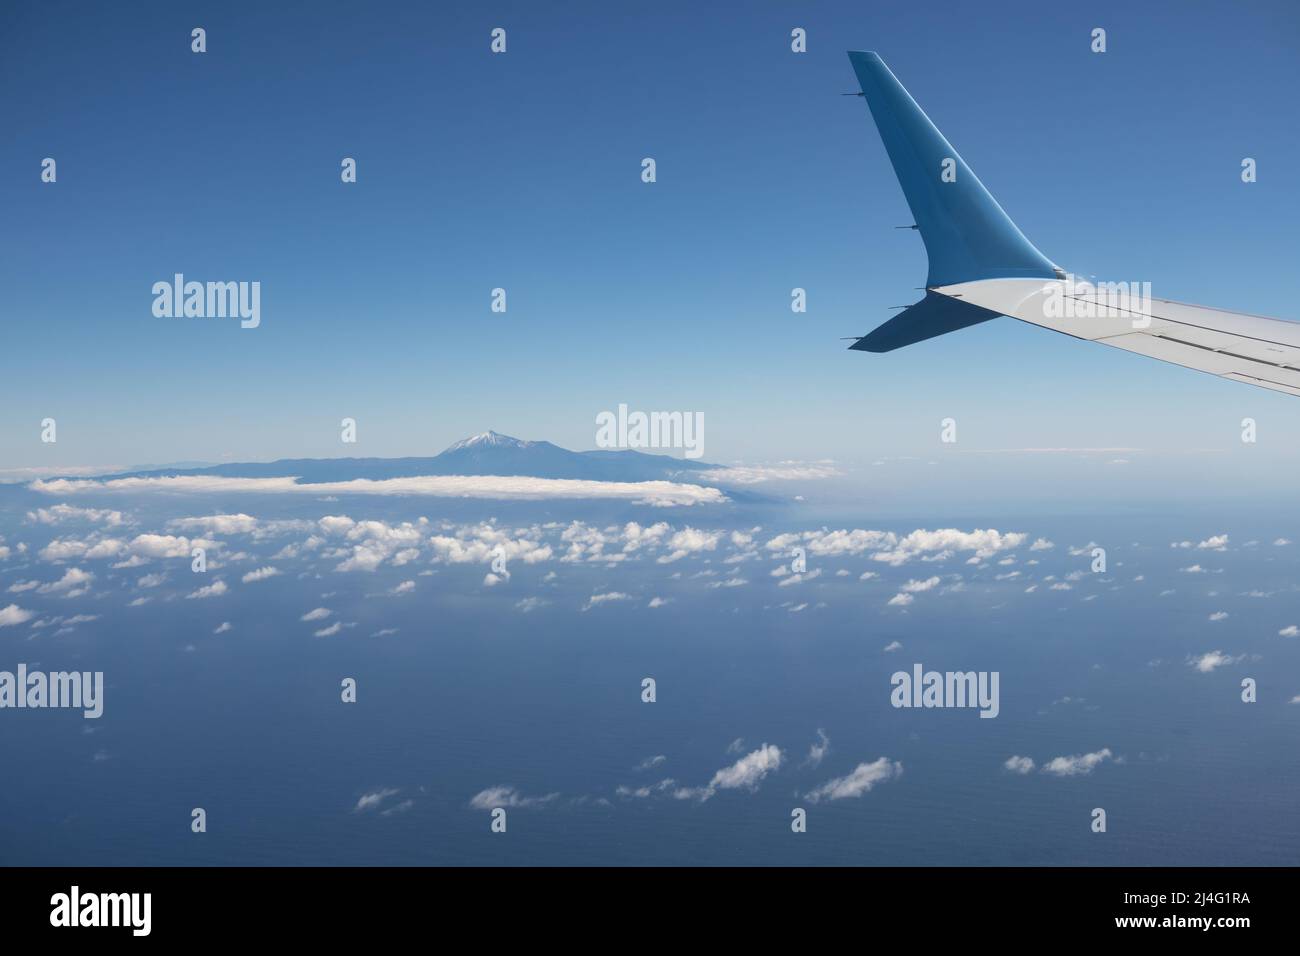 Ala de un avión volando sobre el Océano Atlántico con vista a la isla Tenerife con el monte Teide Foto de stock